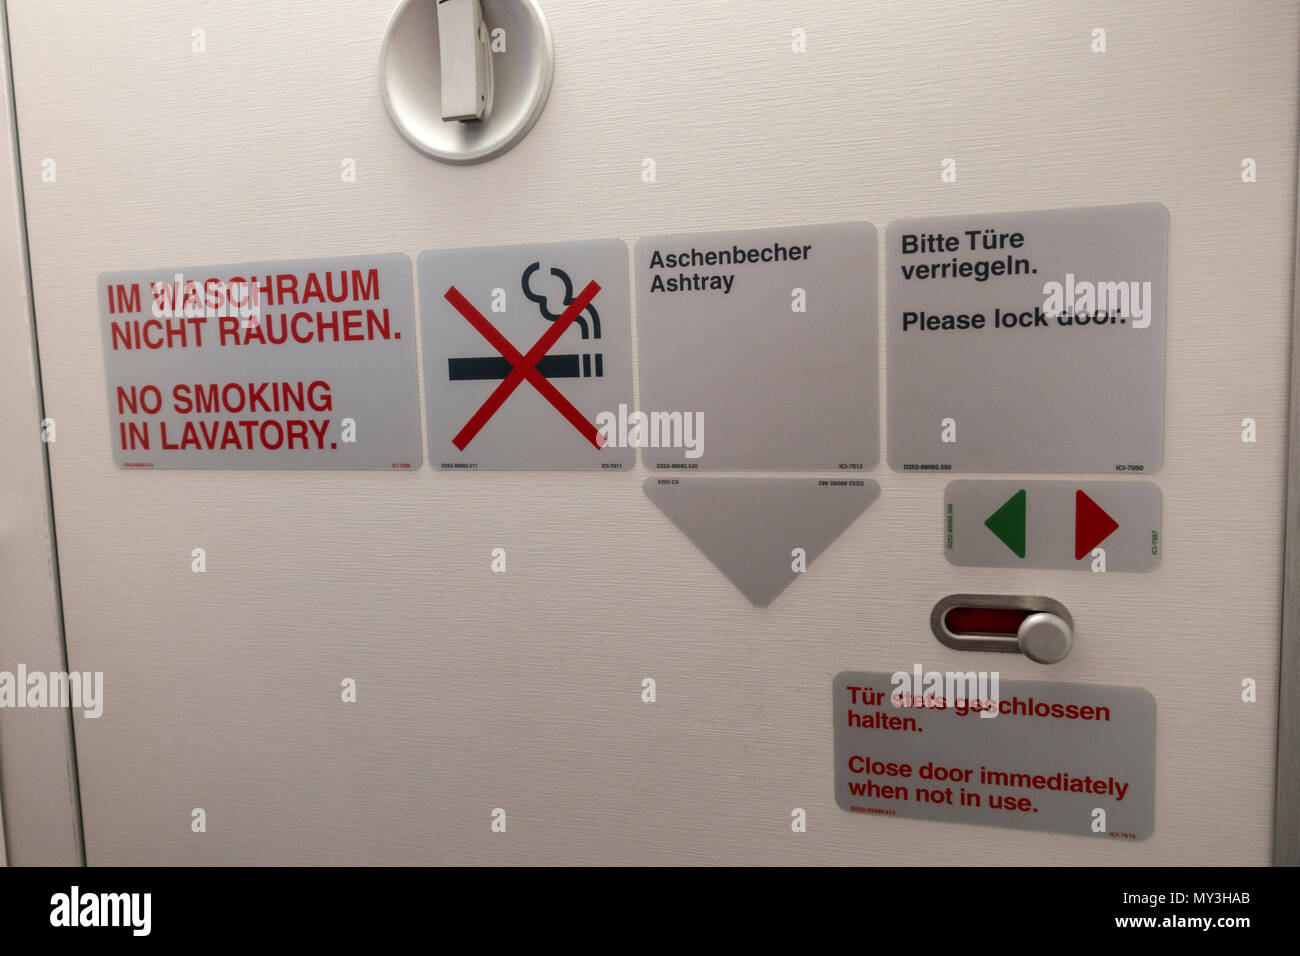 Flugzeug WC-Tür mit Rauchverbot Warnzeichen neben einem Aschenbecher  Zeichen auf eine europäische Fluggesellschaft Stockfotografie - Alamy